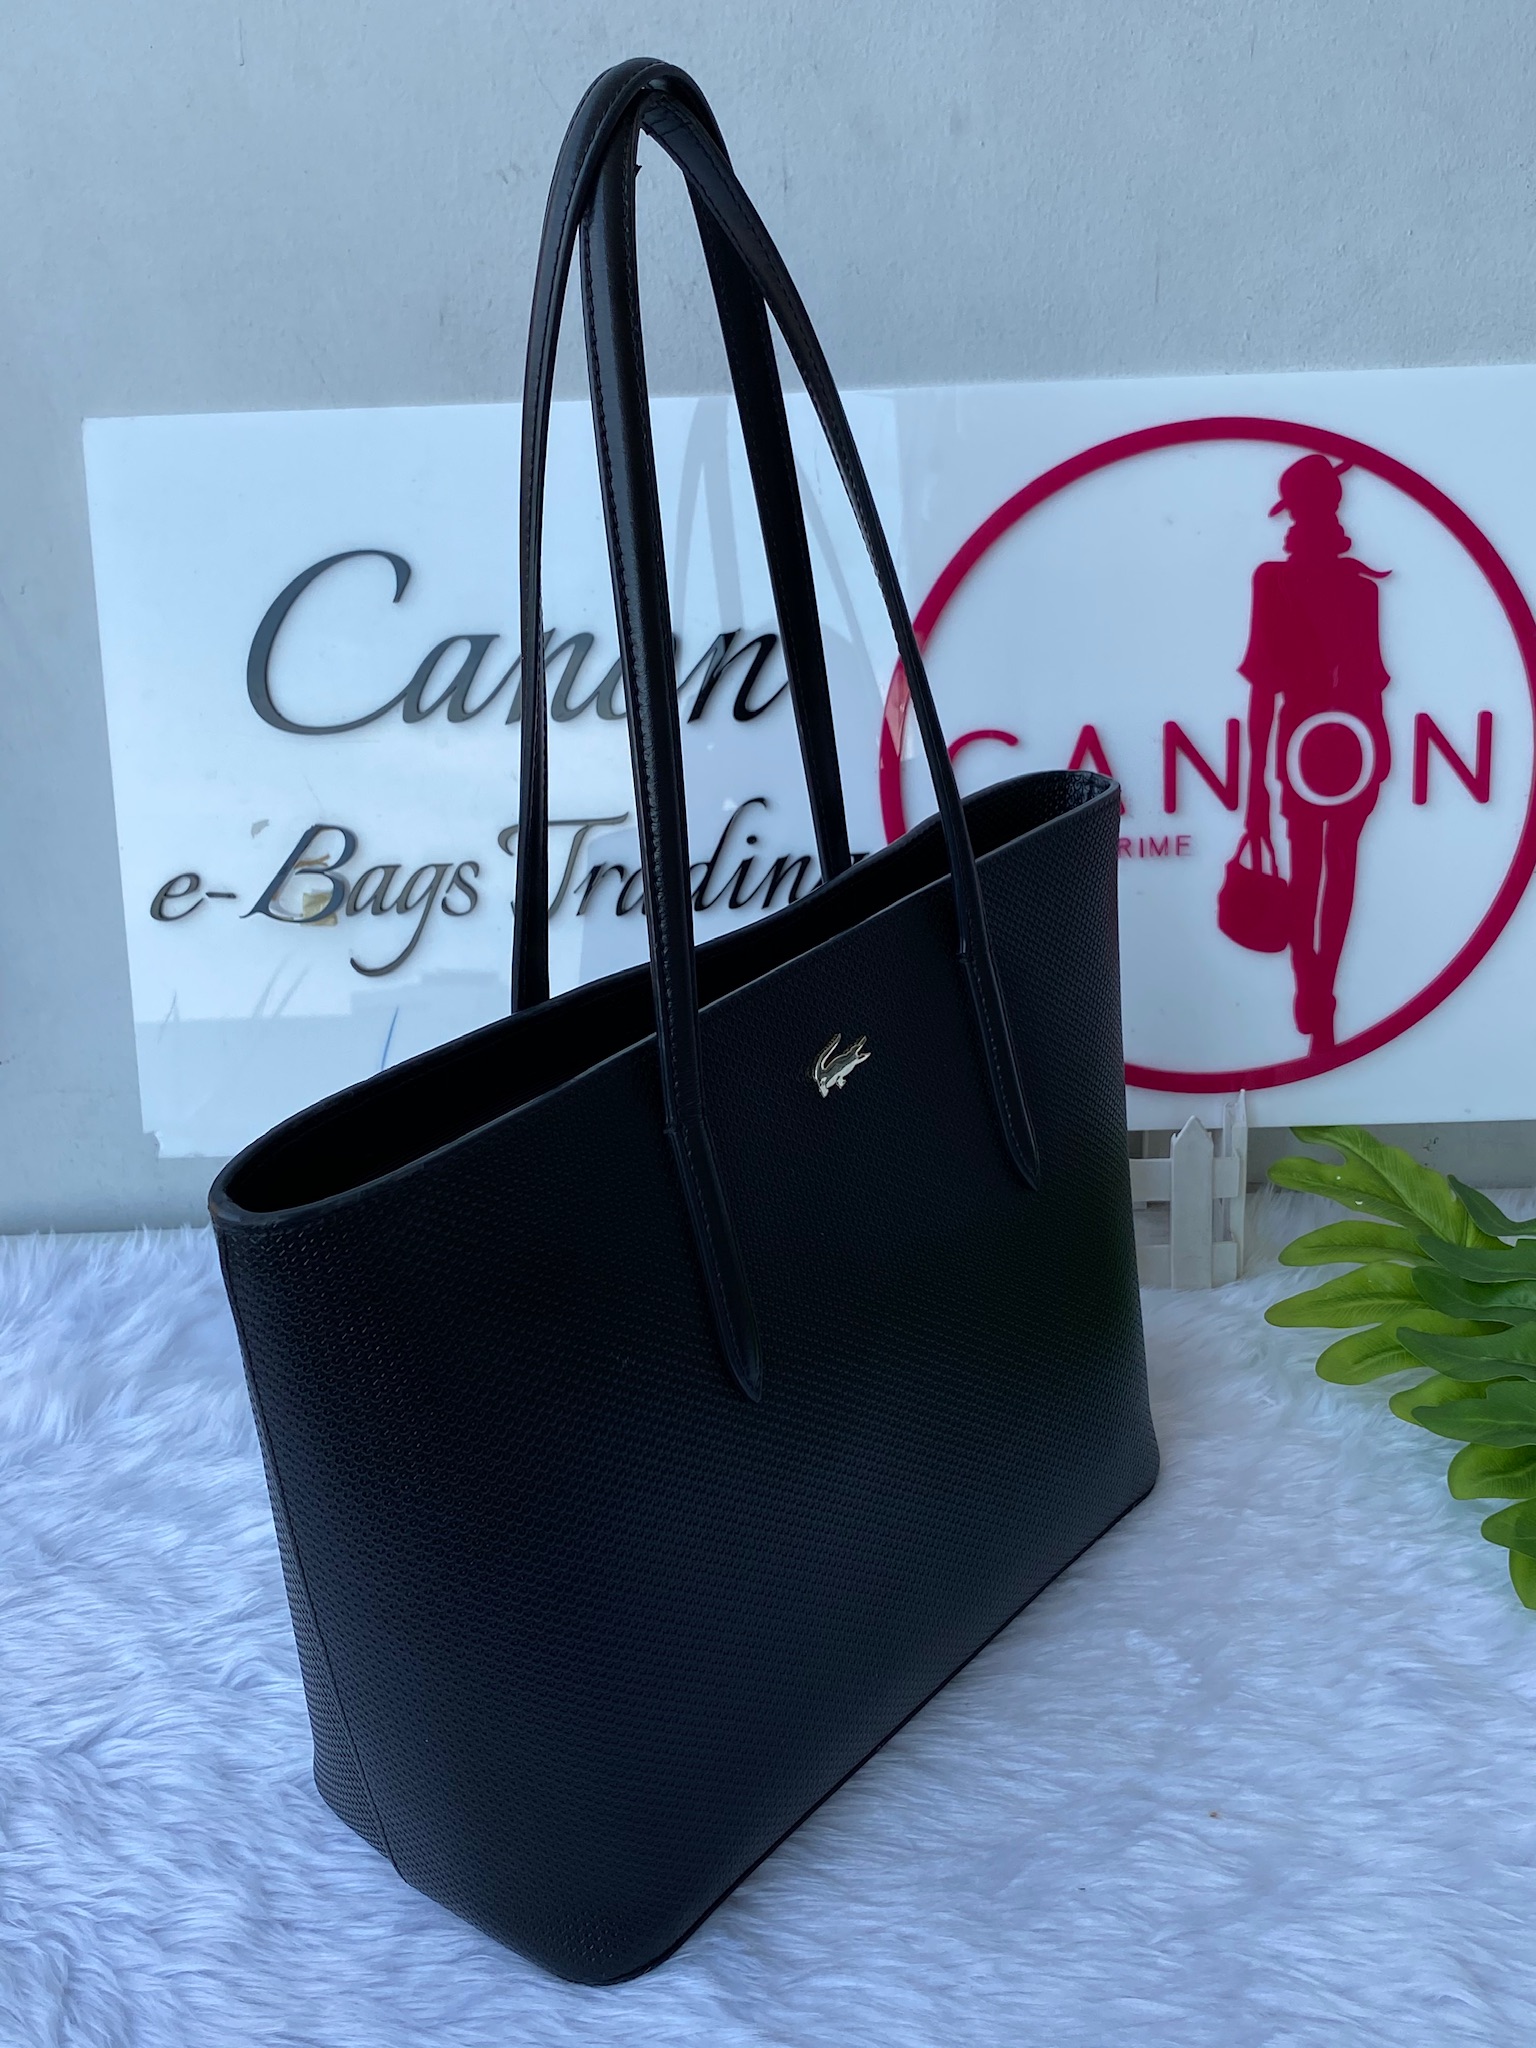 Lacoste Chantaco Leather Black Tote Bag. - Canon E-Bags Prime